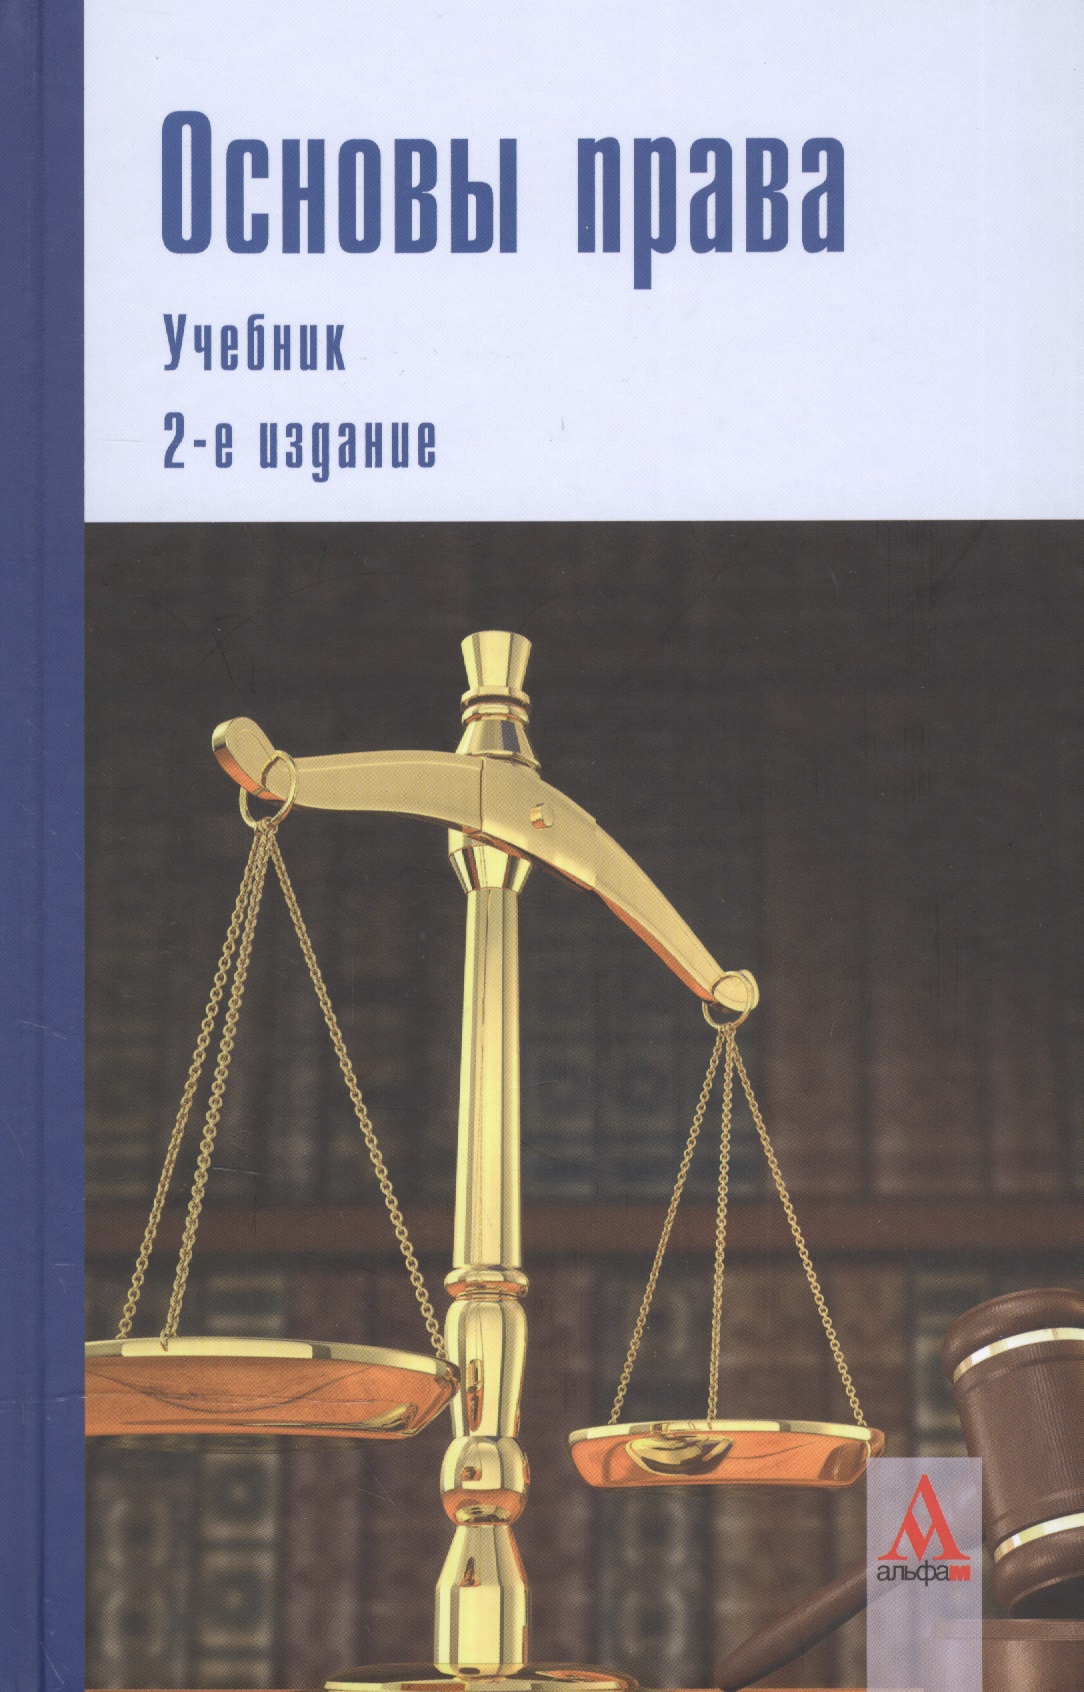 Ахметзянова З. А. Основы права: учебник. 2-е изд.перераб. и доп.